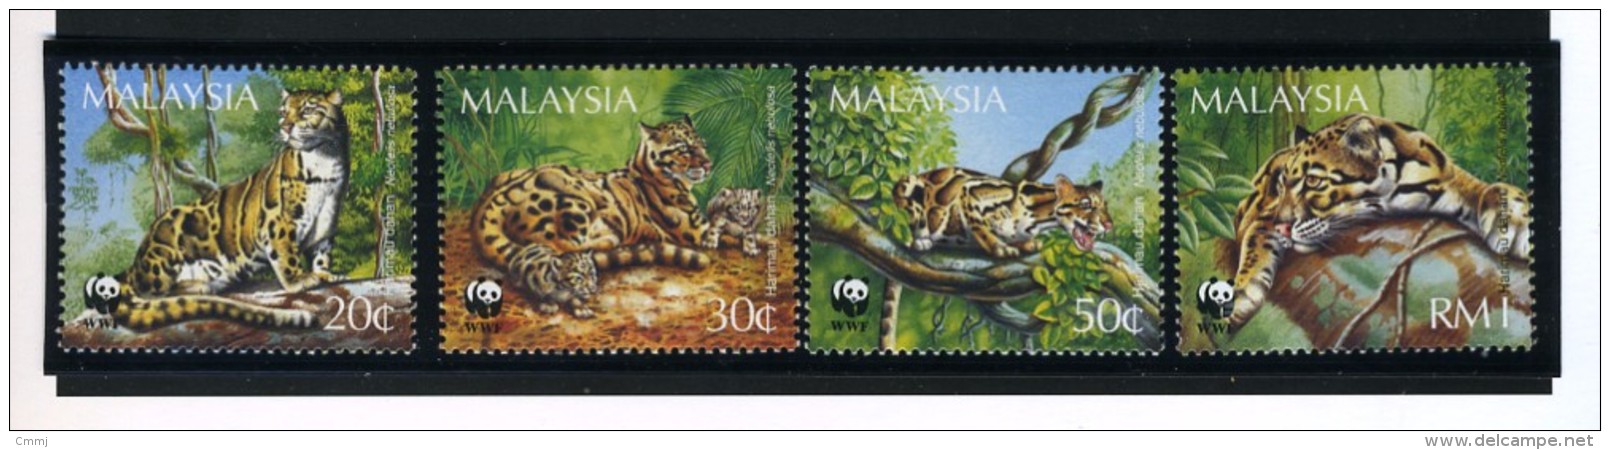 1995 - MALESIA - MALAYSIA -  Mi. Nr. 557/560 - NH -  (CAT 2016.2 WWF) - Malesia (1964-...)